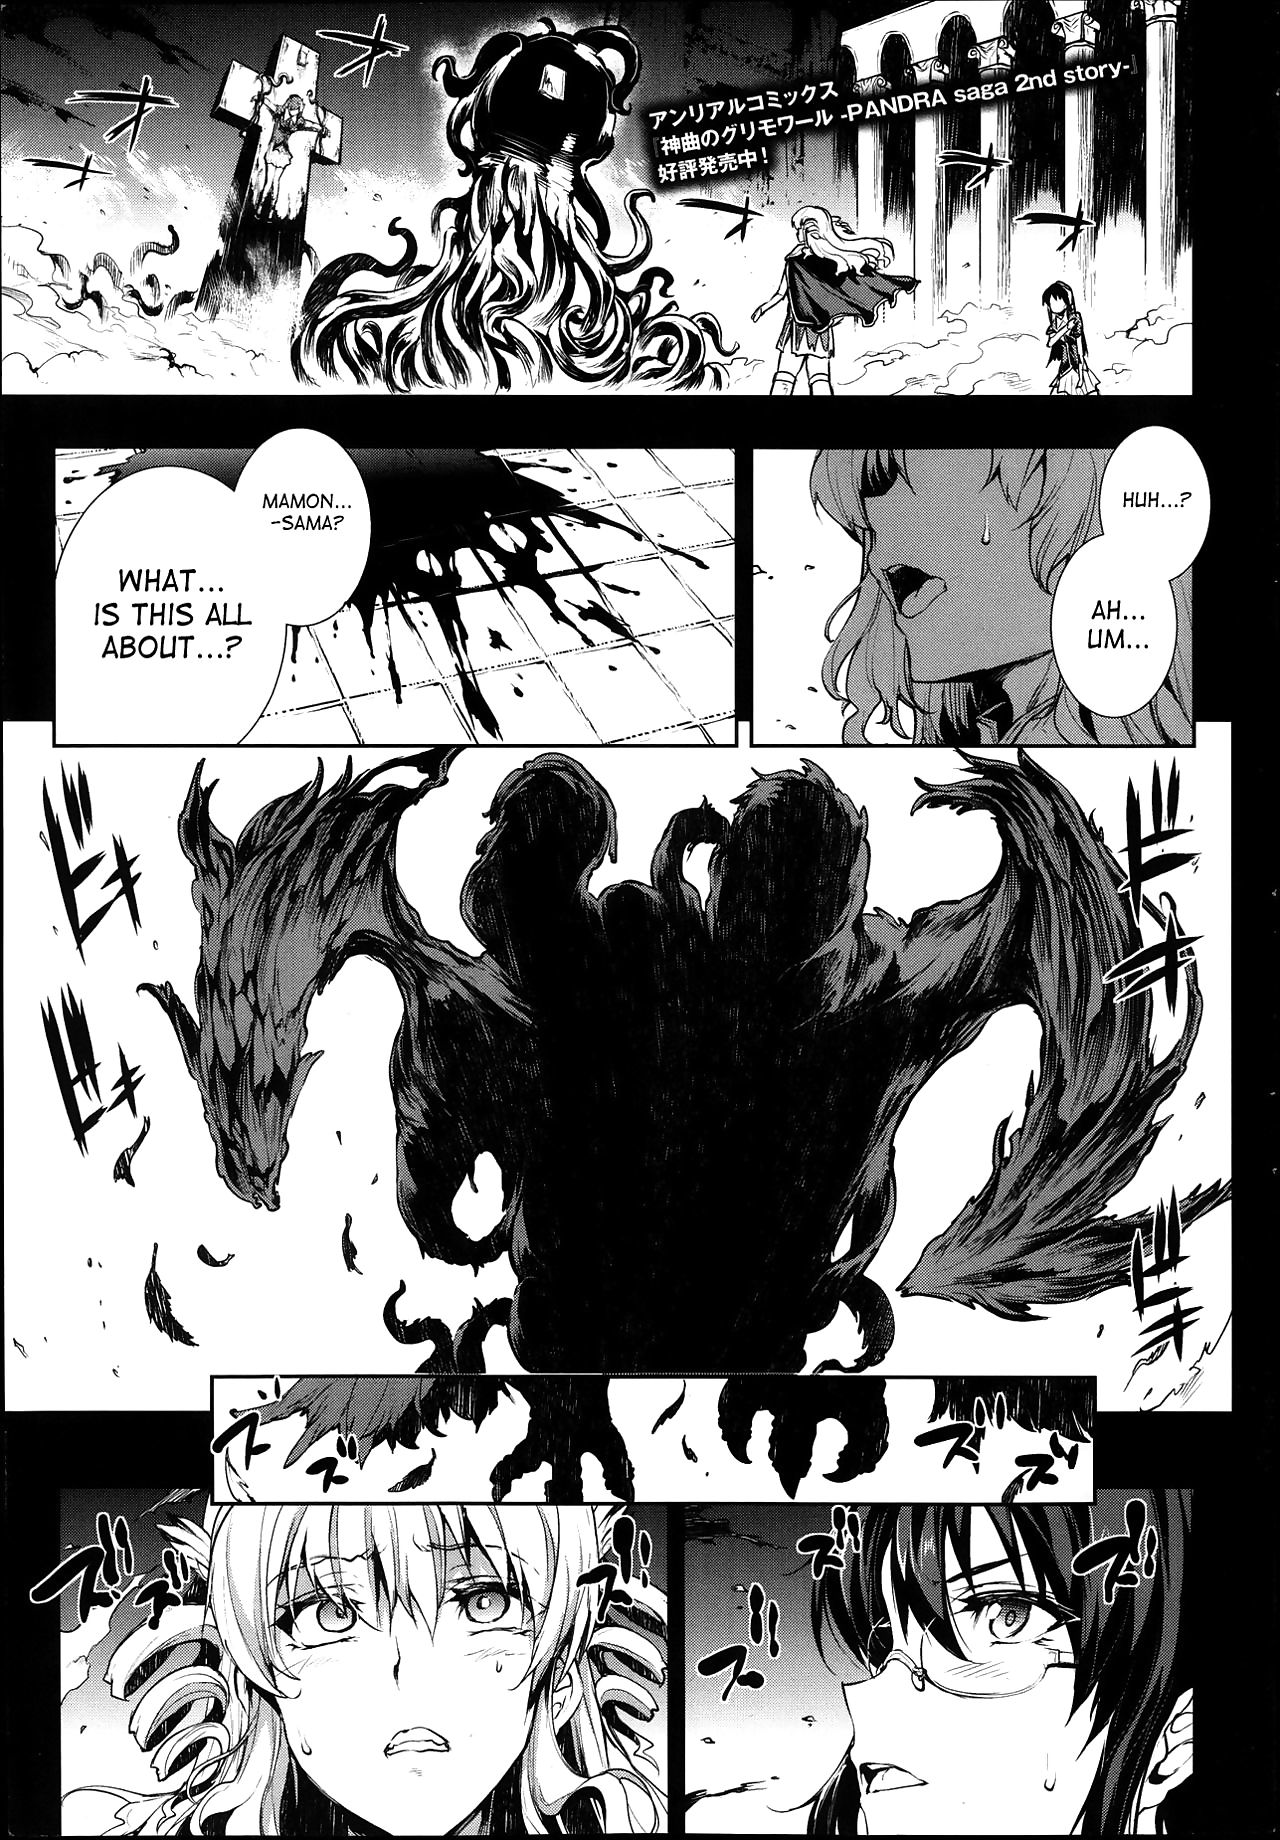 Shinkyoku no Grimoire -PANDRA saga 2nd story- - part 14